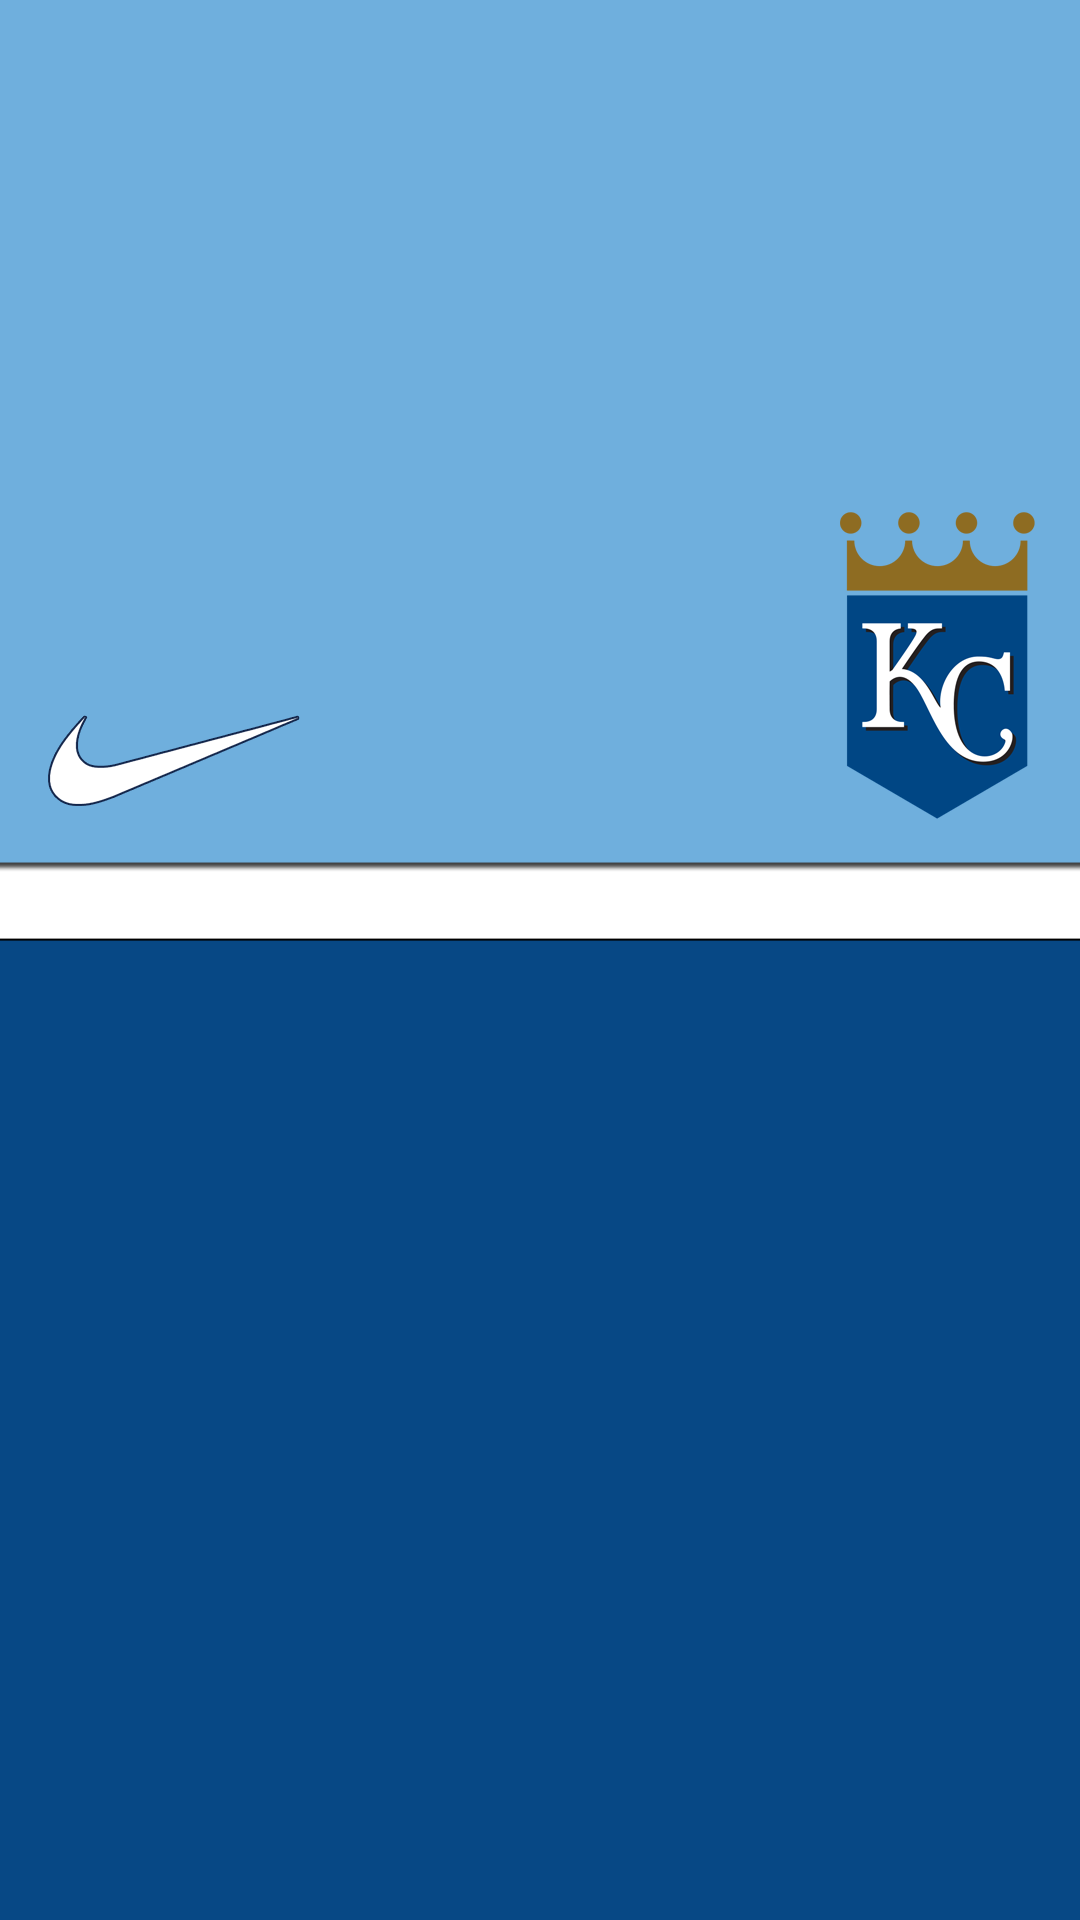 Kansas City Royals Nike IPhone wallpaper HD. Free desktop